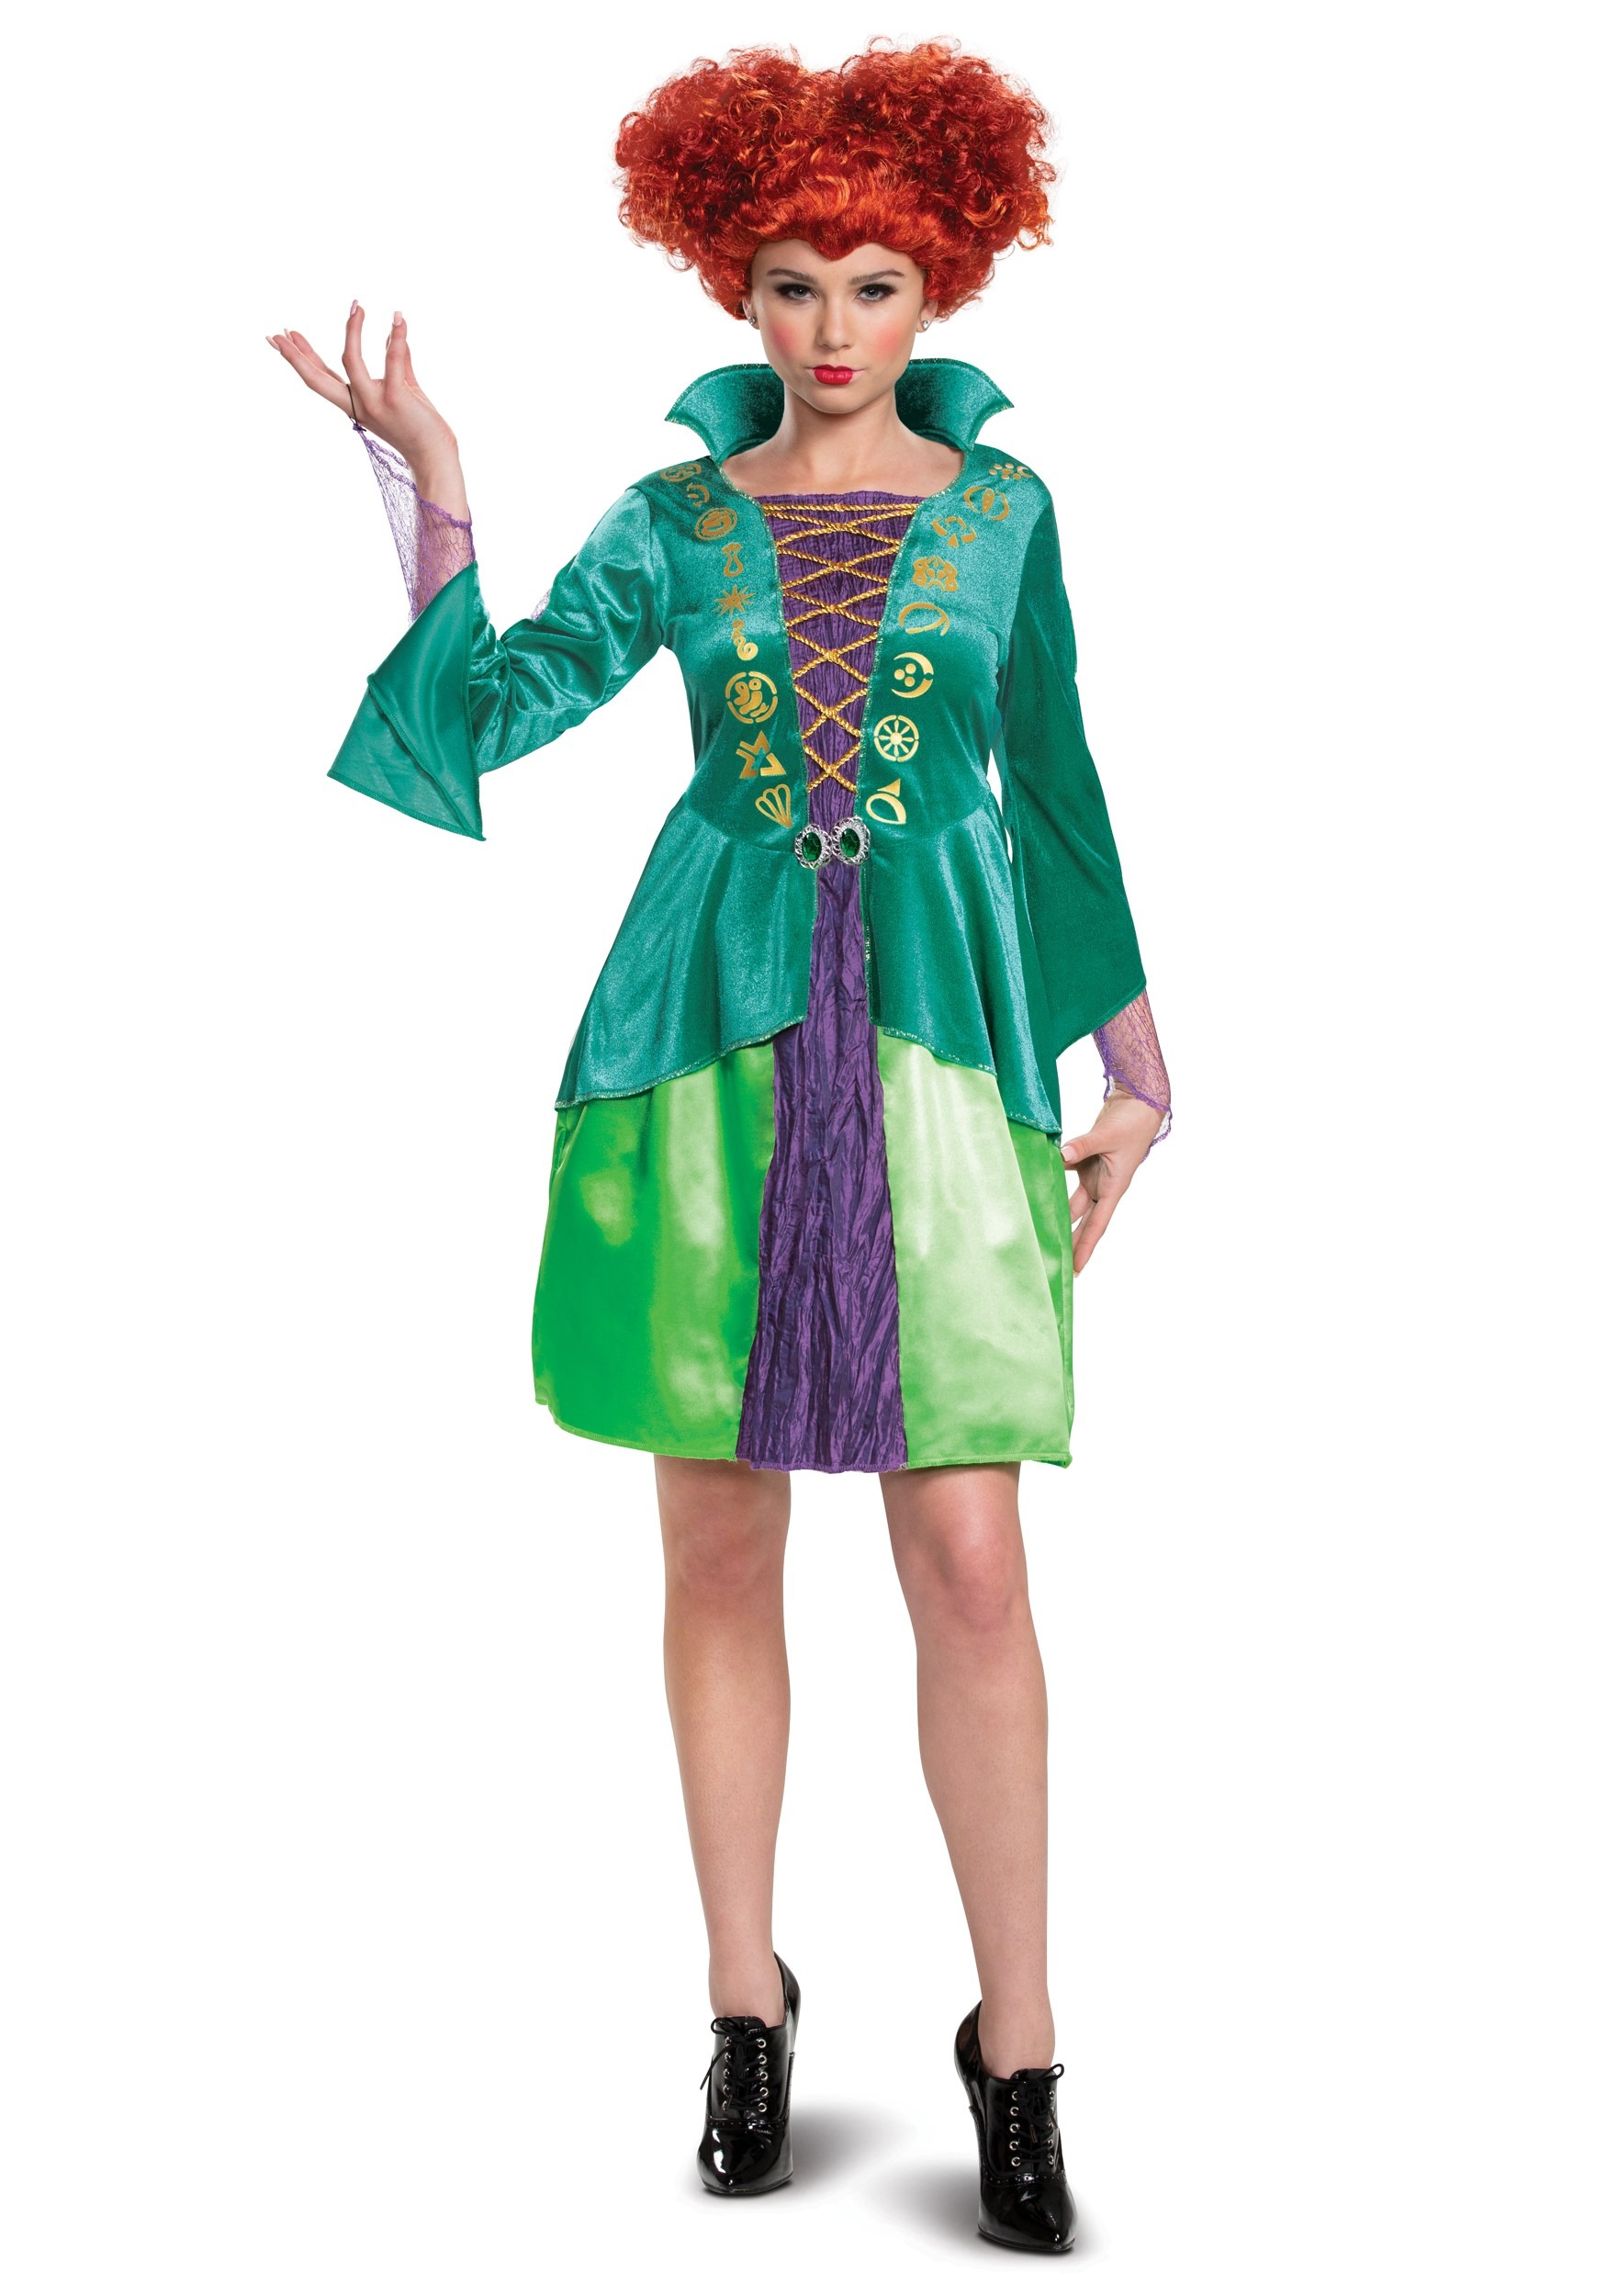 Image of Adult Disney Hocus Pocus Classic Wini Costume Dress | Disney Costumes ID DI15191-S